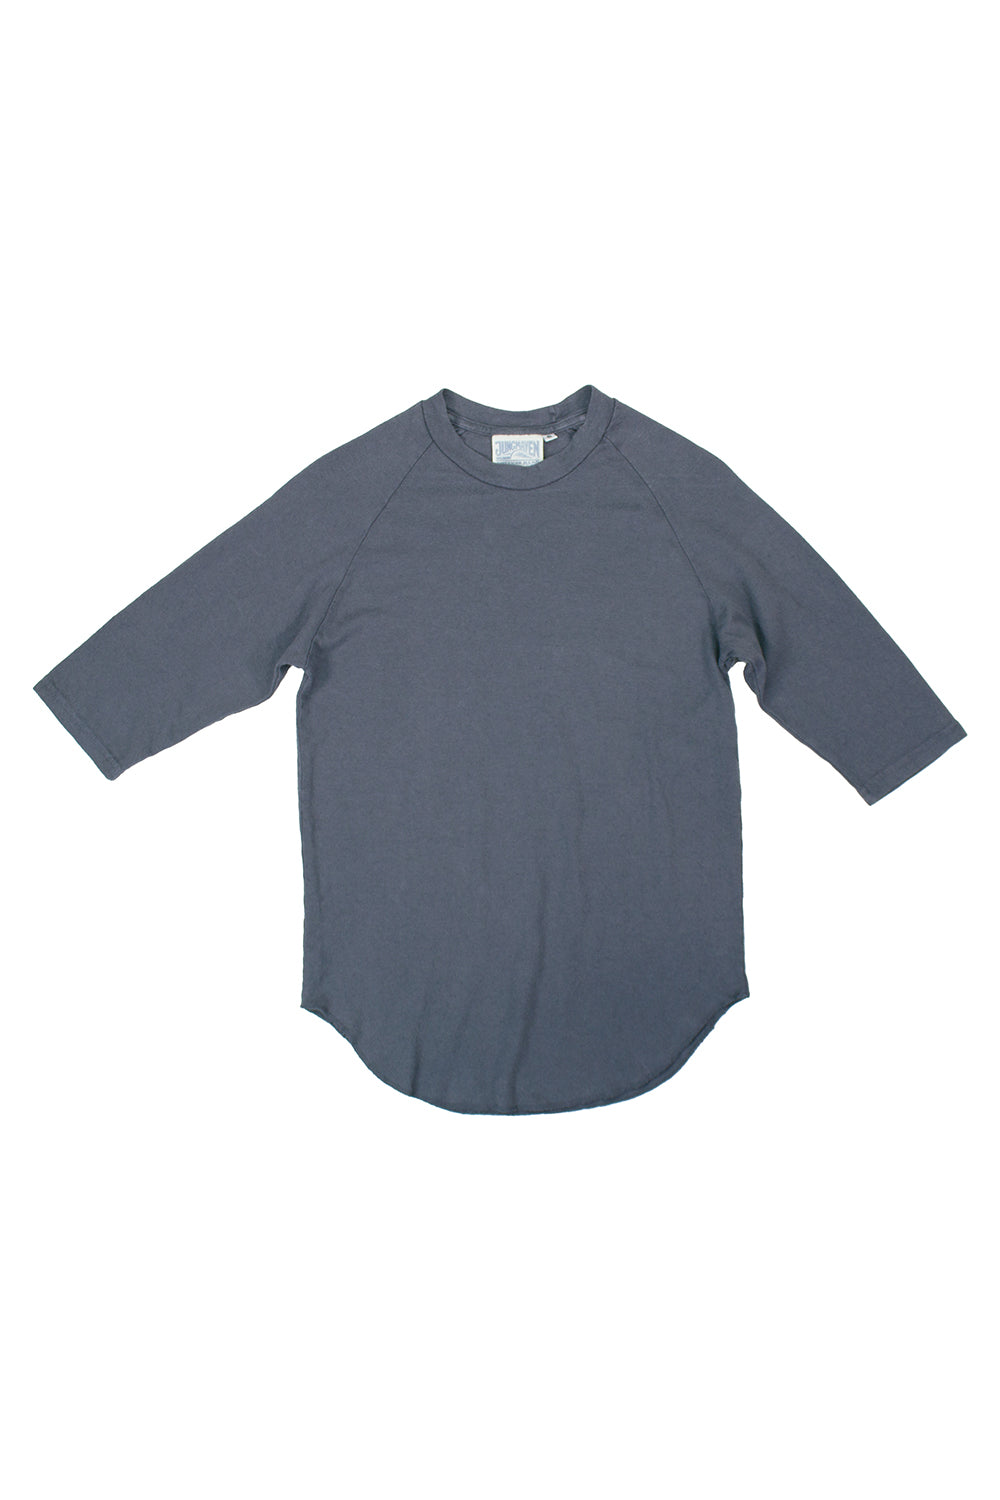 Solid Raglan 3/4 Sleeve | Jungmaven Hemp Clothing & Accessories / Color: Diesel Gray